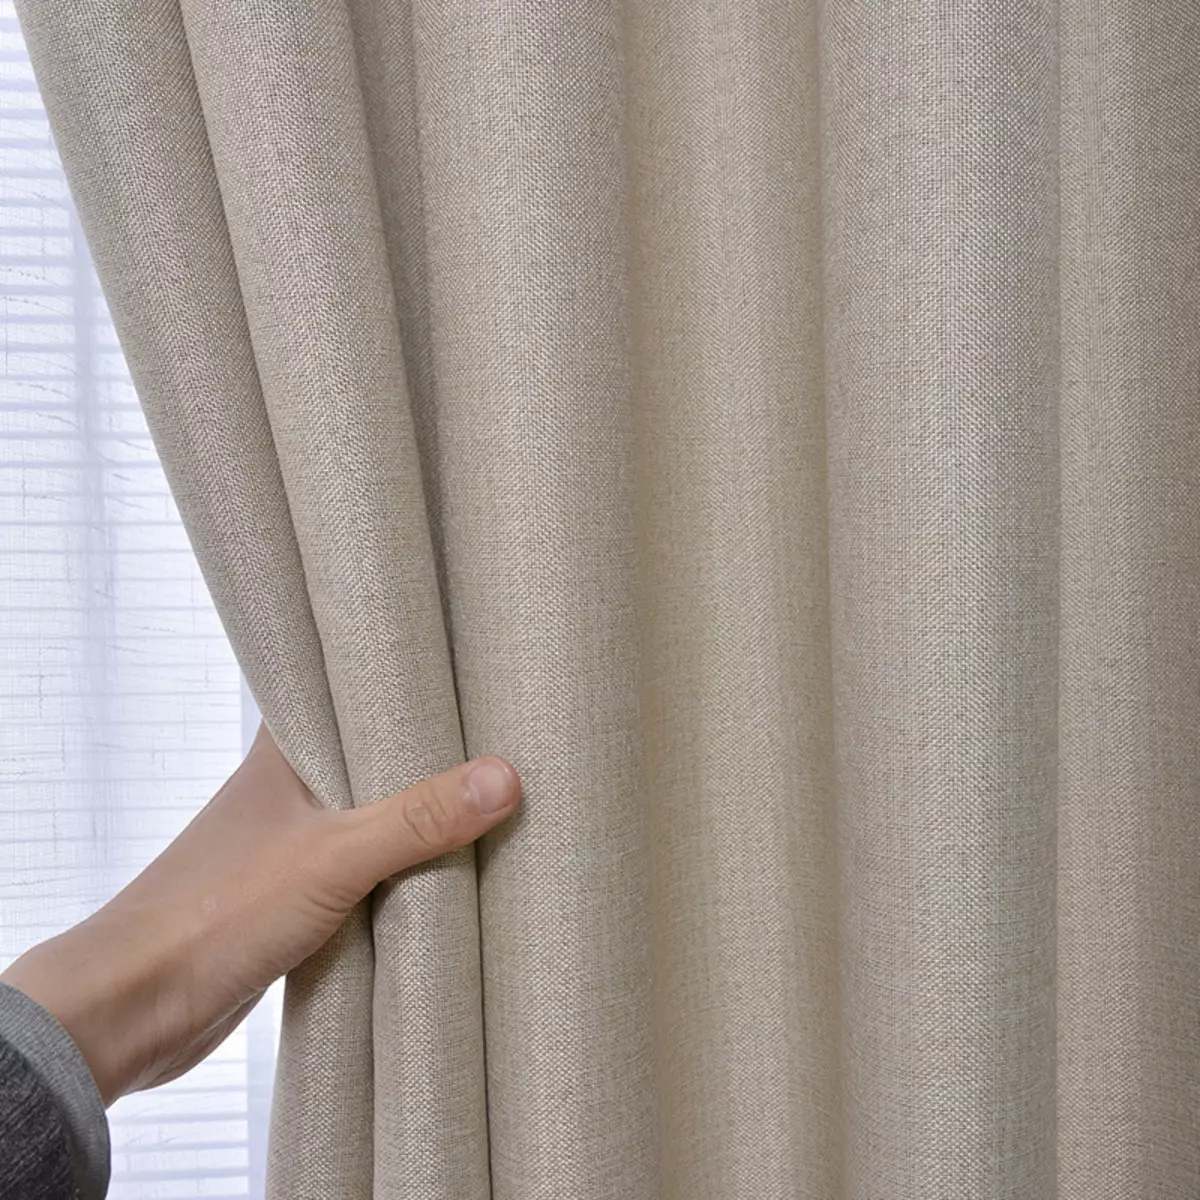 Rèm cửa trên ban công (115 ảnh): Ý tưởng cho thiết kế rèm cửa sổ ban công. Làm thế nào để treo rèm đẹp? Thiết kế rèm bạt nhẹ và các tùy chọn khác 10025_24